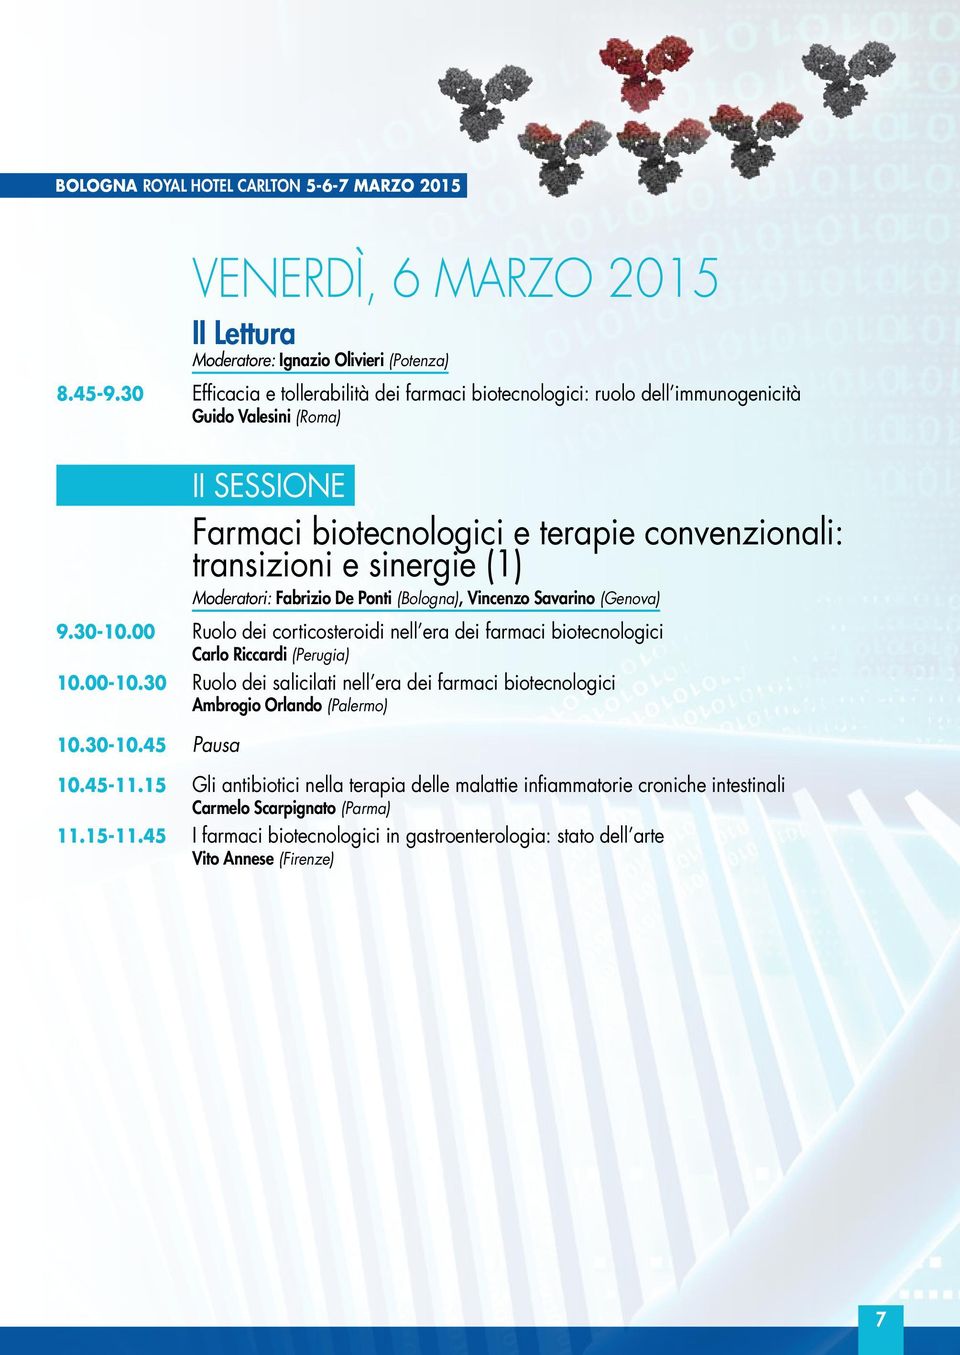 Moderatori: Fabrizio De Ponti (Bologna), Vincenzo Savarino (Genova) 9.30-10.00 Ruolo dei corticosteroidi nell era dei farmaci biotecnologici Carlo Riccardi (Perugia) 10.00-10.